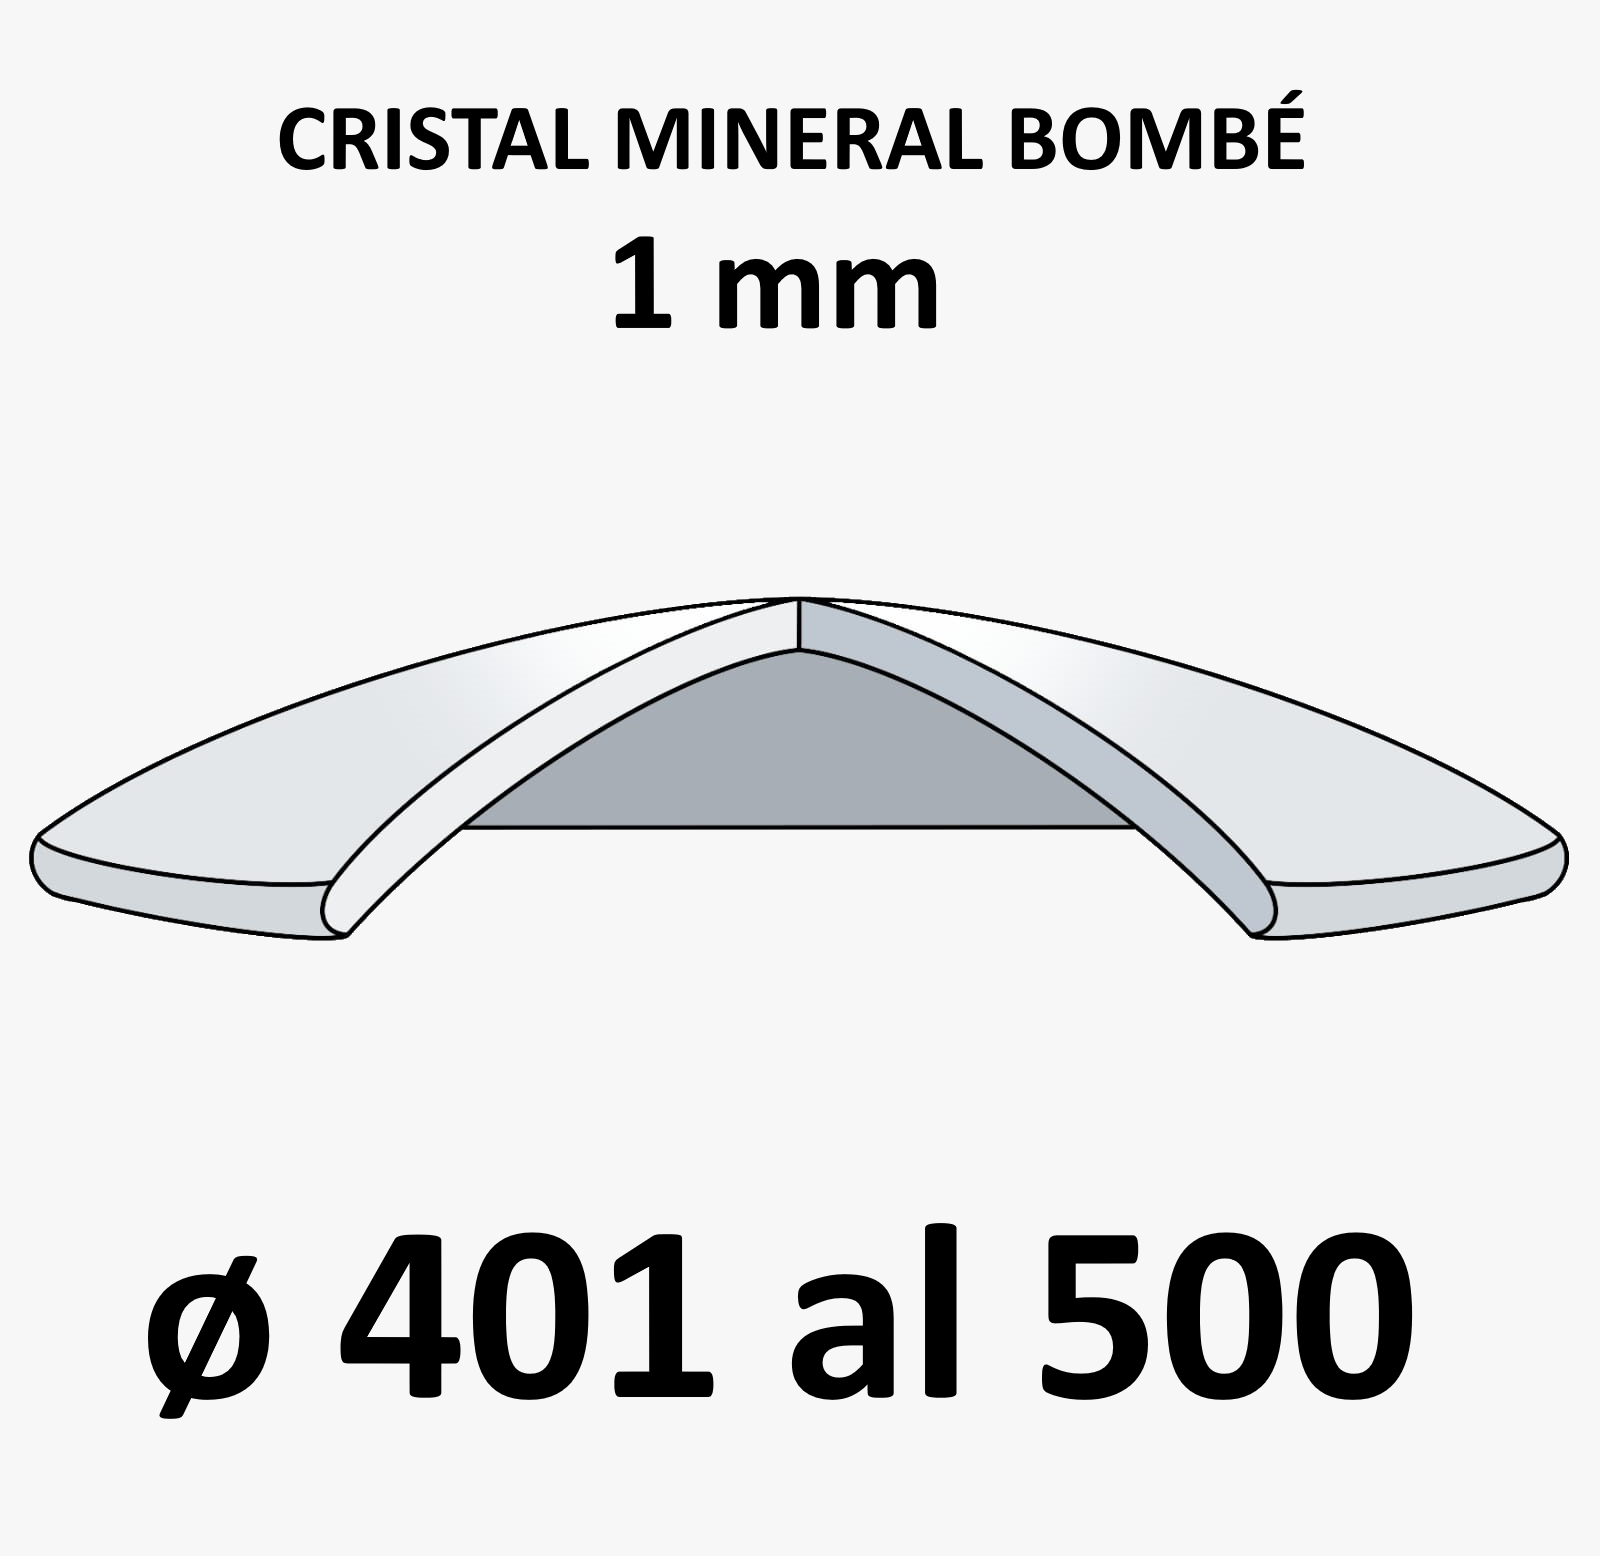 Cristal mineral bombé 1 mm (De 401 a 500)